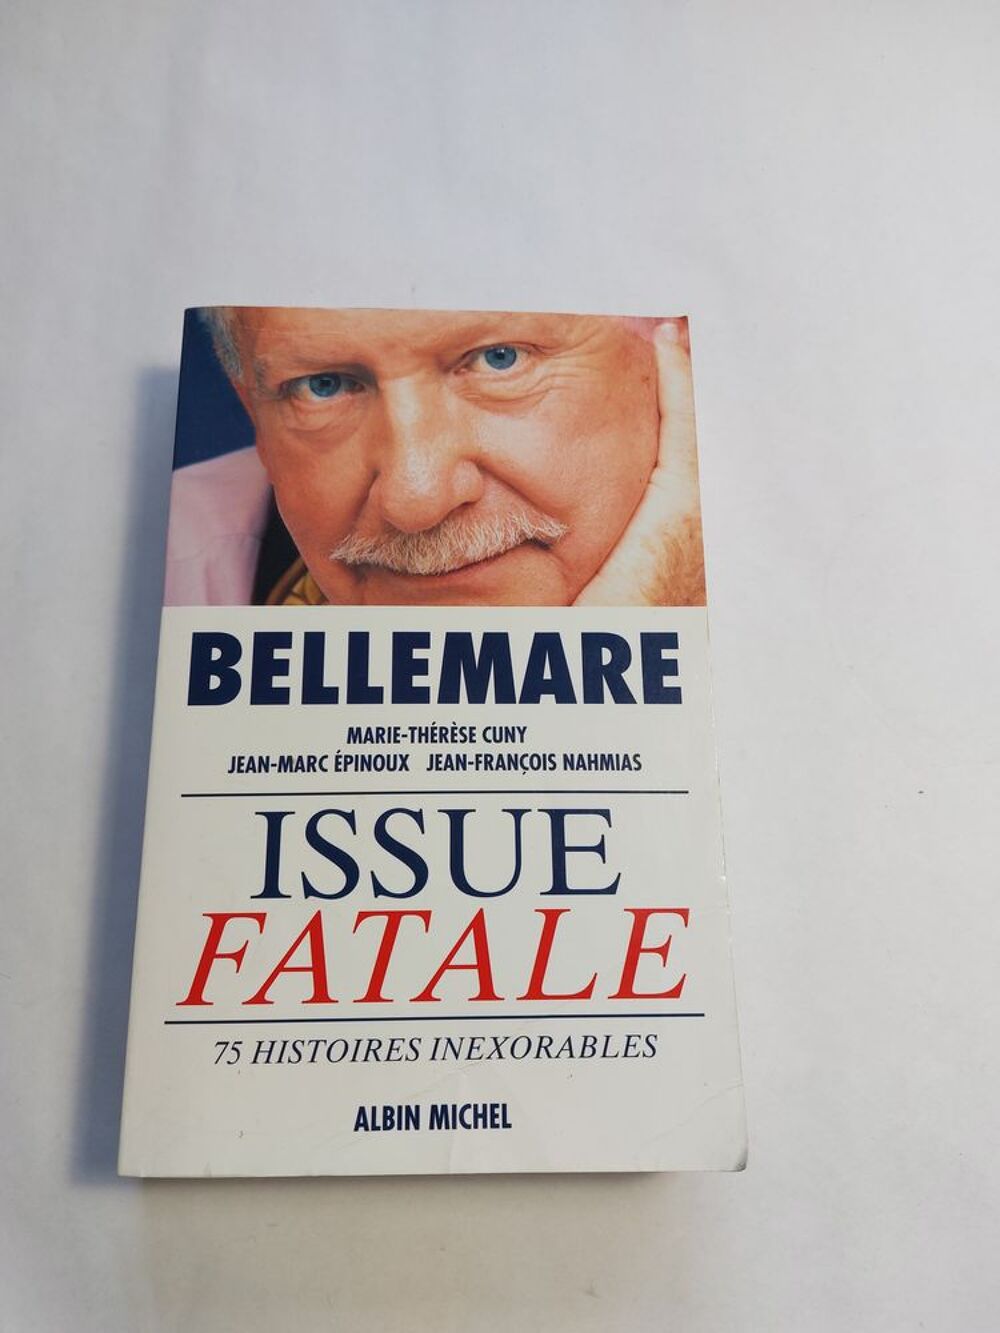 Pierre Bellemare / Issue fatale Livres et BD